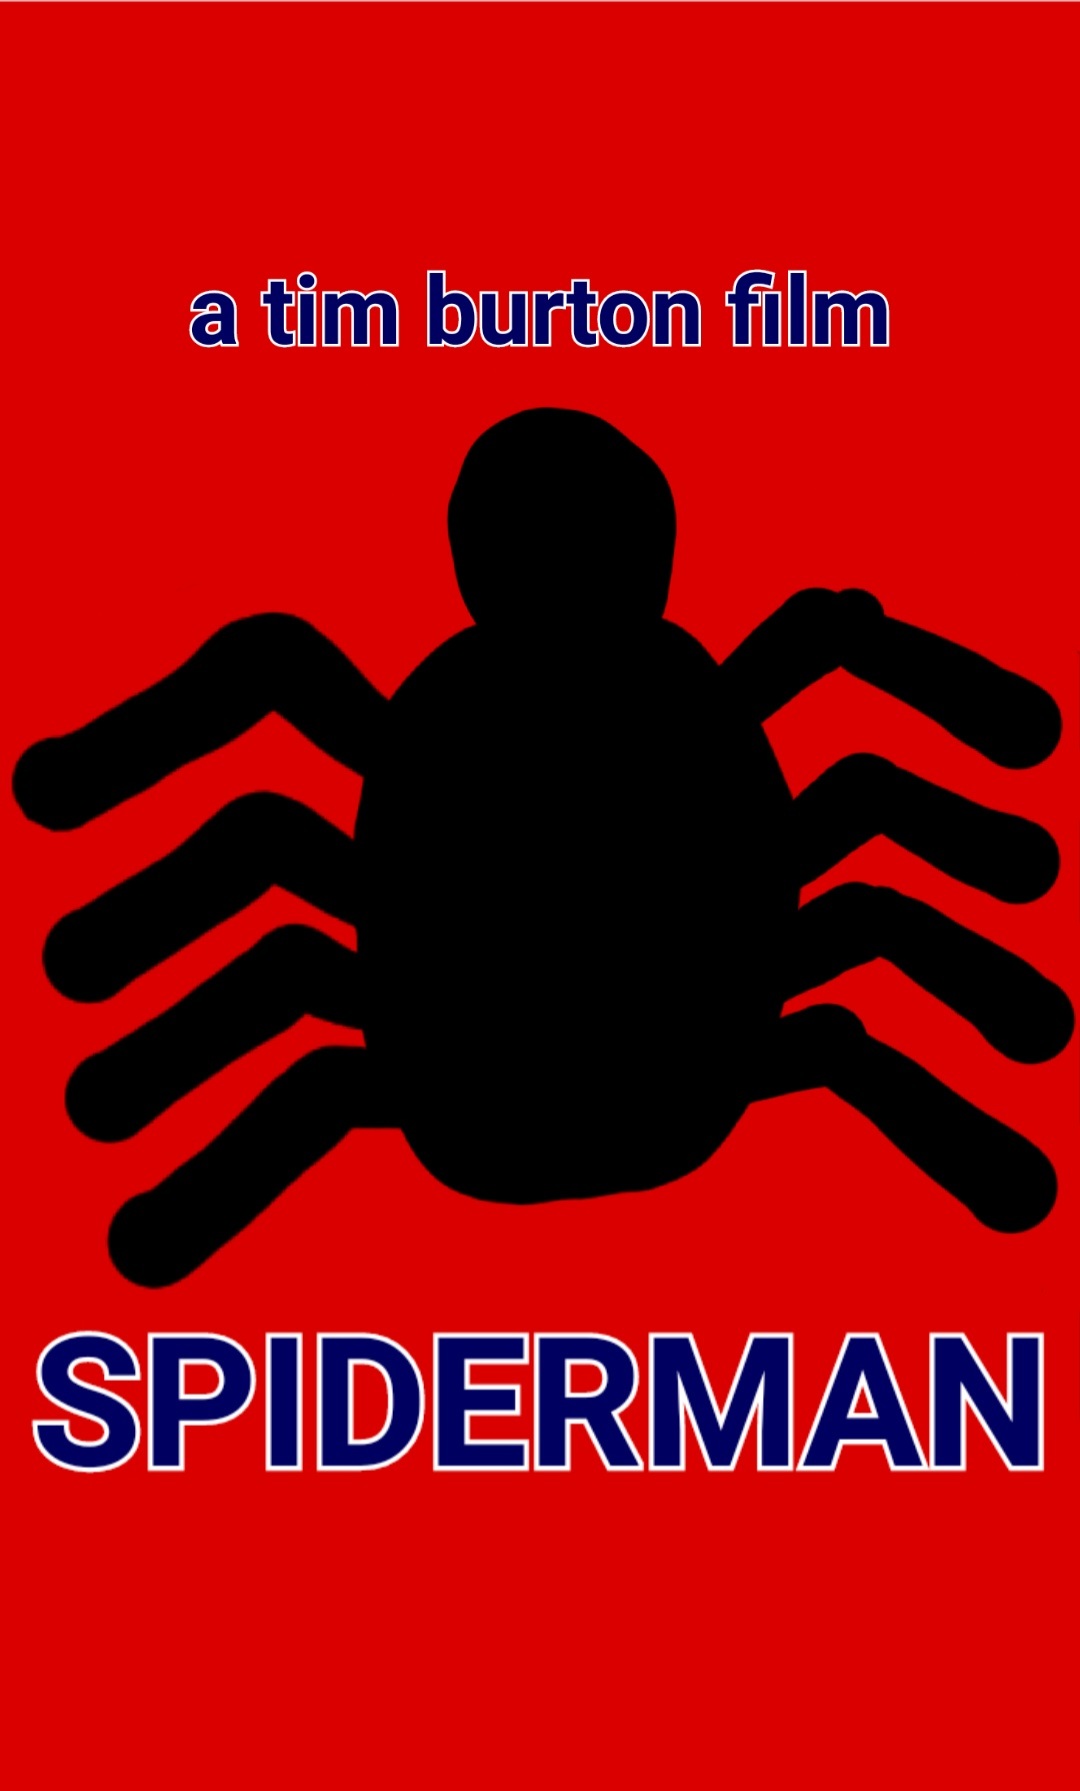 Tim burtons spiderman poster (remake) by gavin53zan on DeviantArt